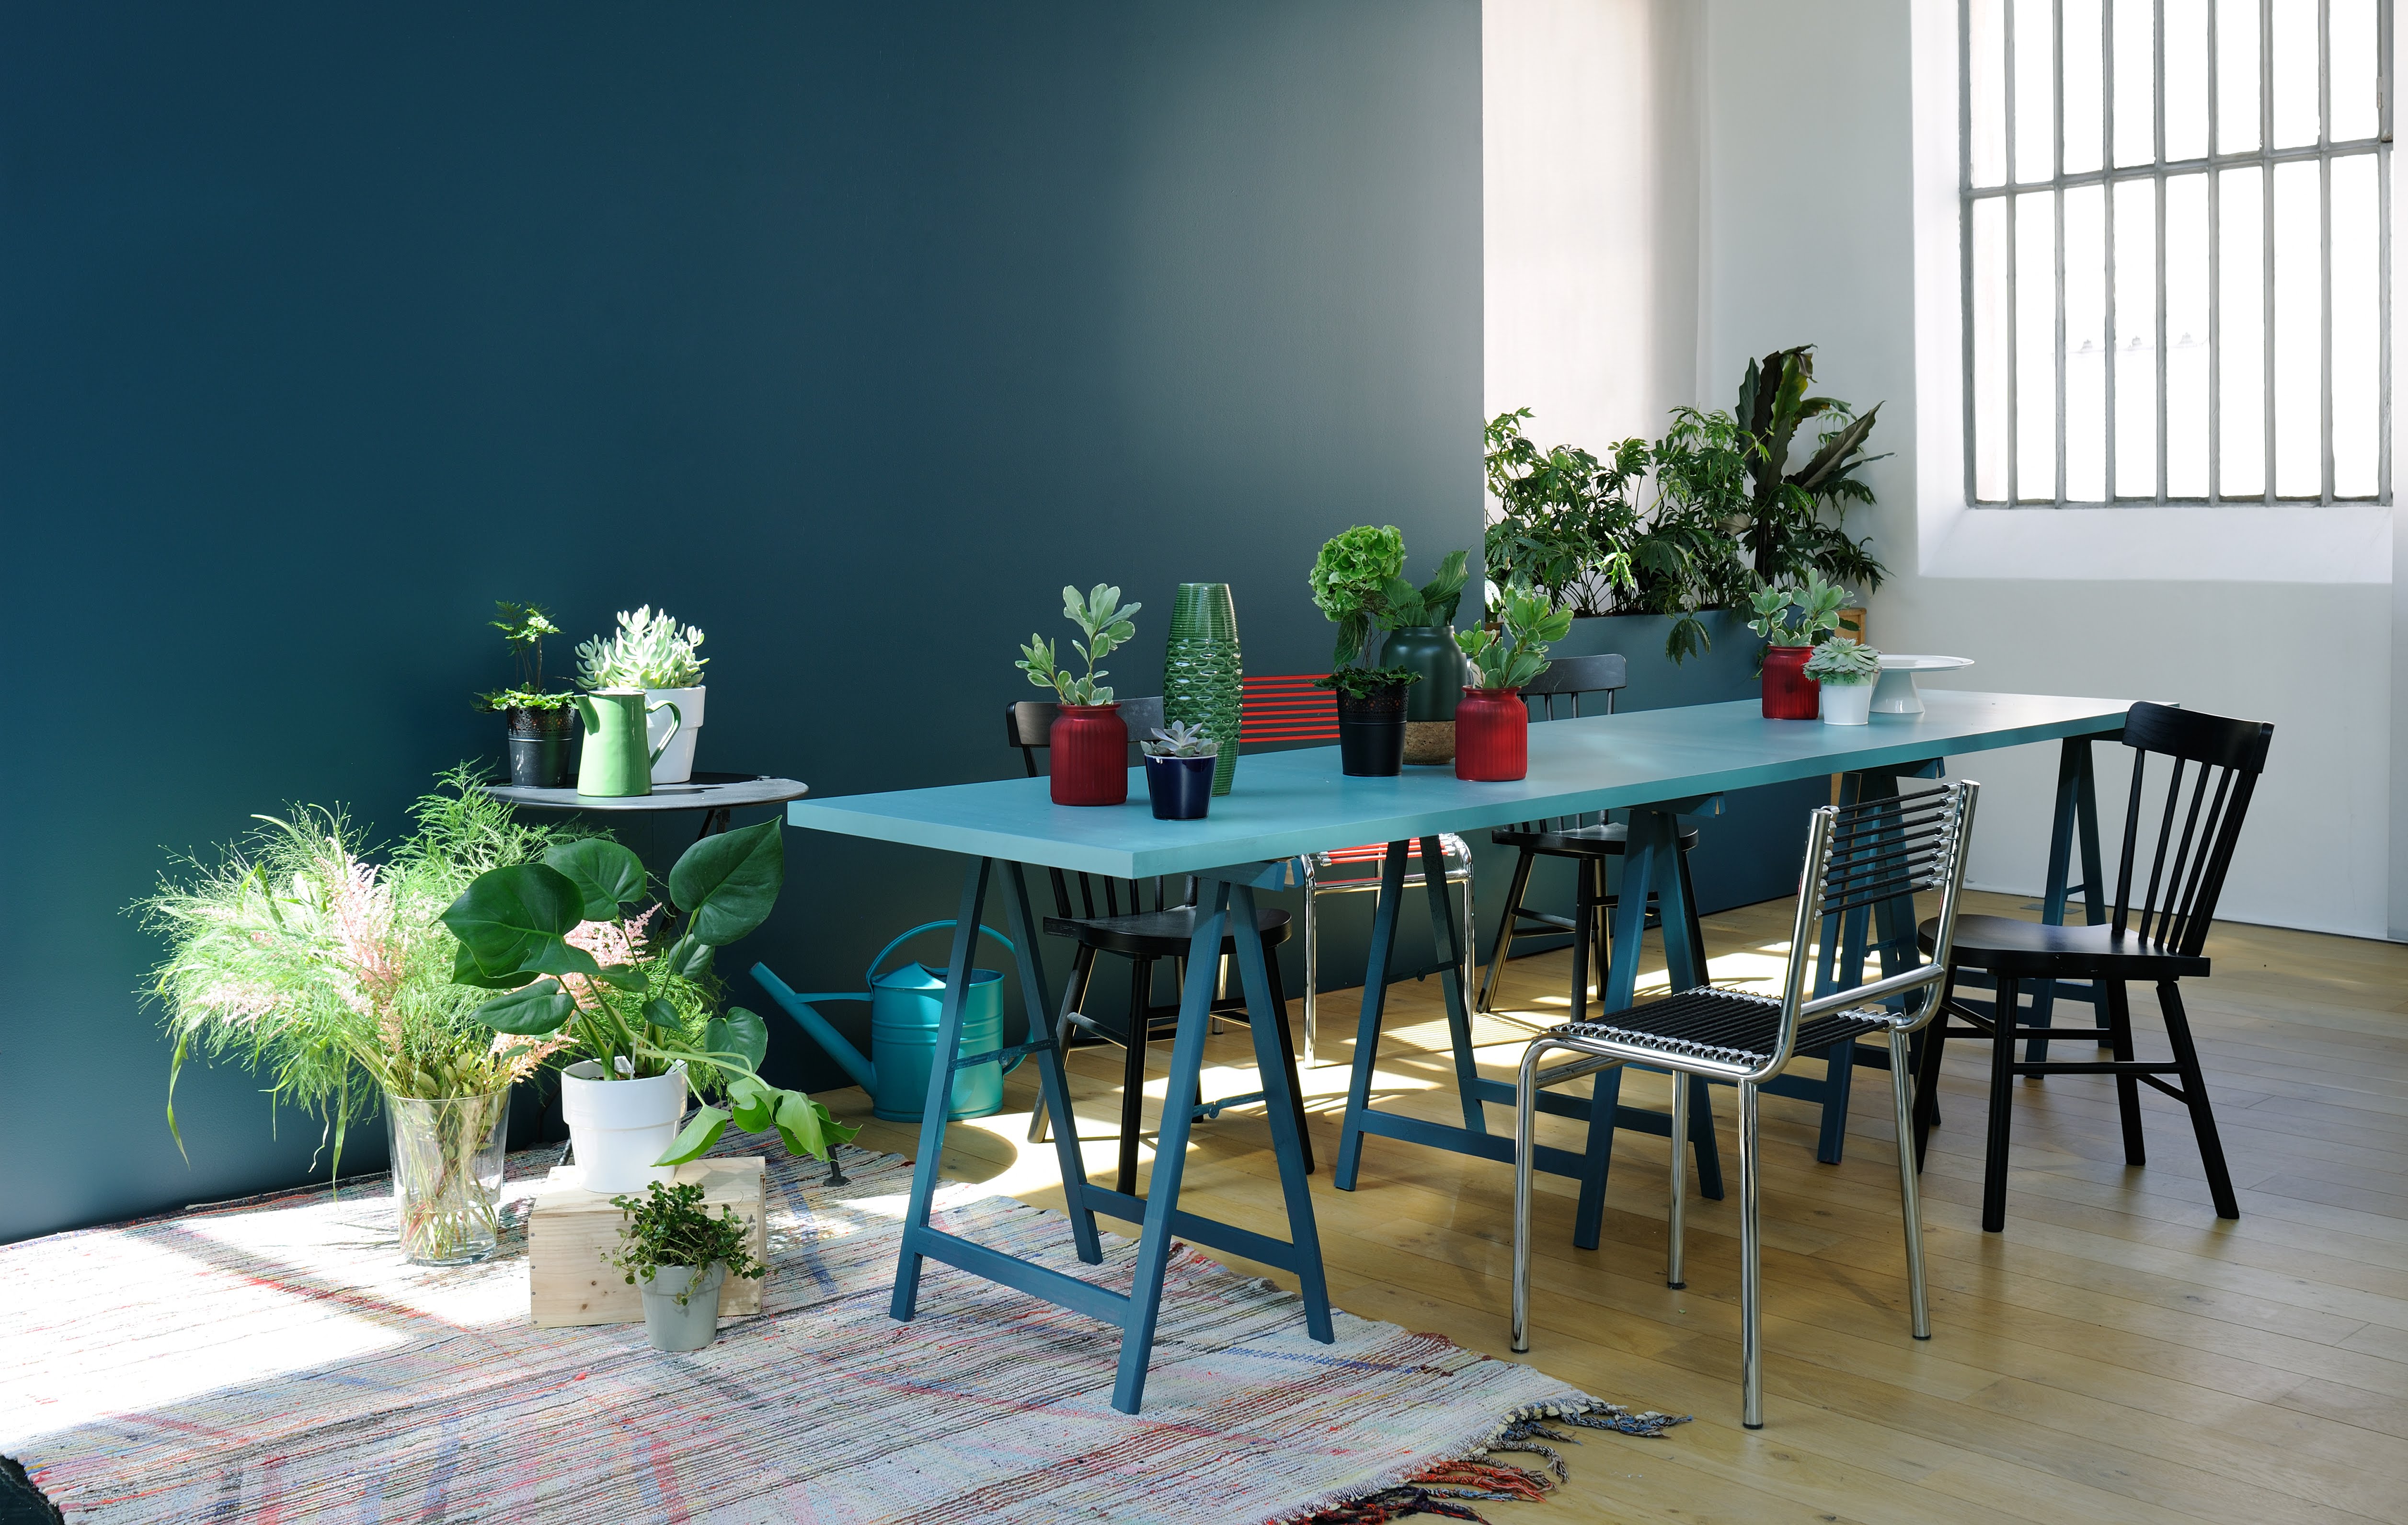 Salle à manger réalisée avec de la peinture intérieure dans les tons de verts et de bleus